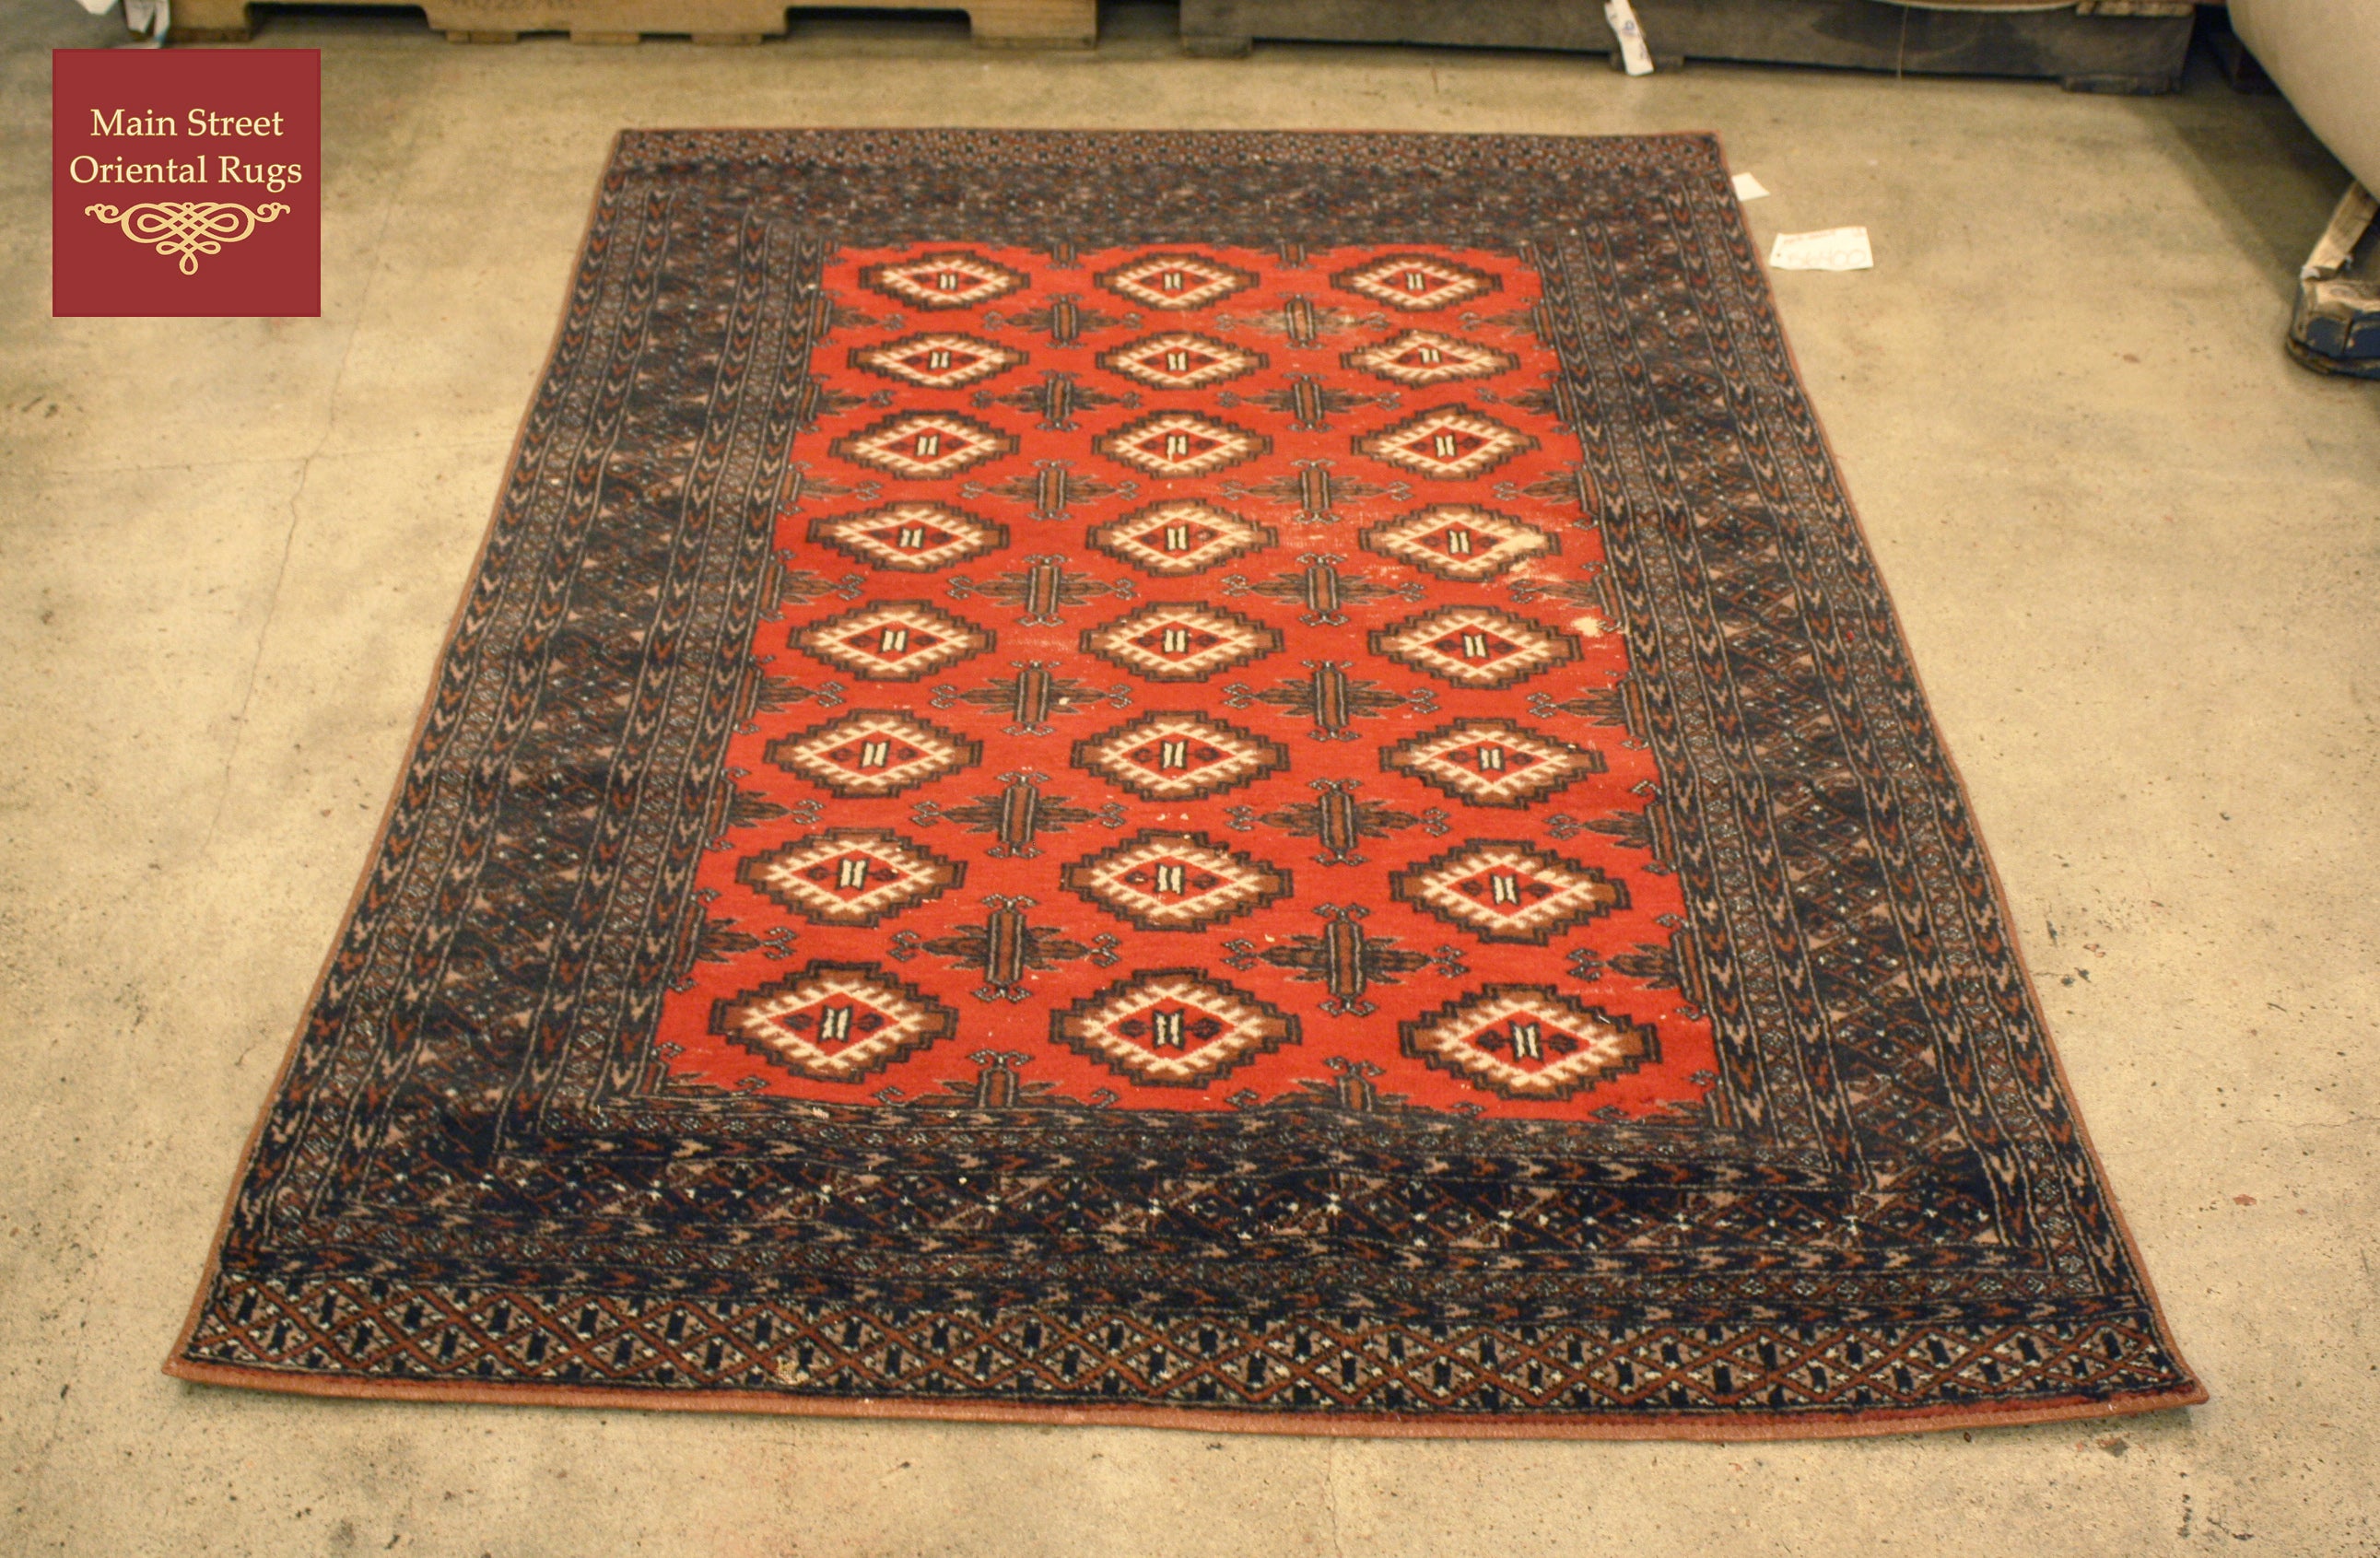 Vintage area rug repair